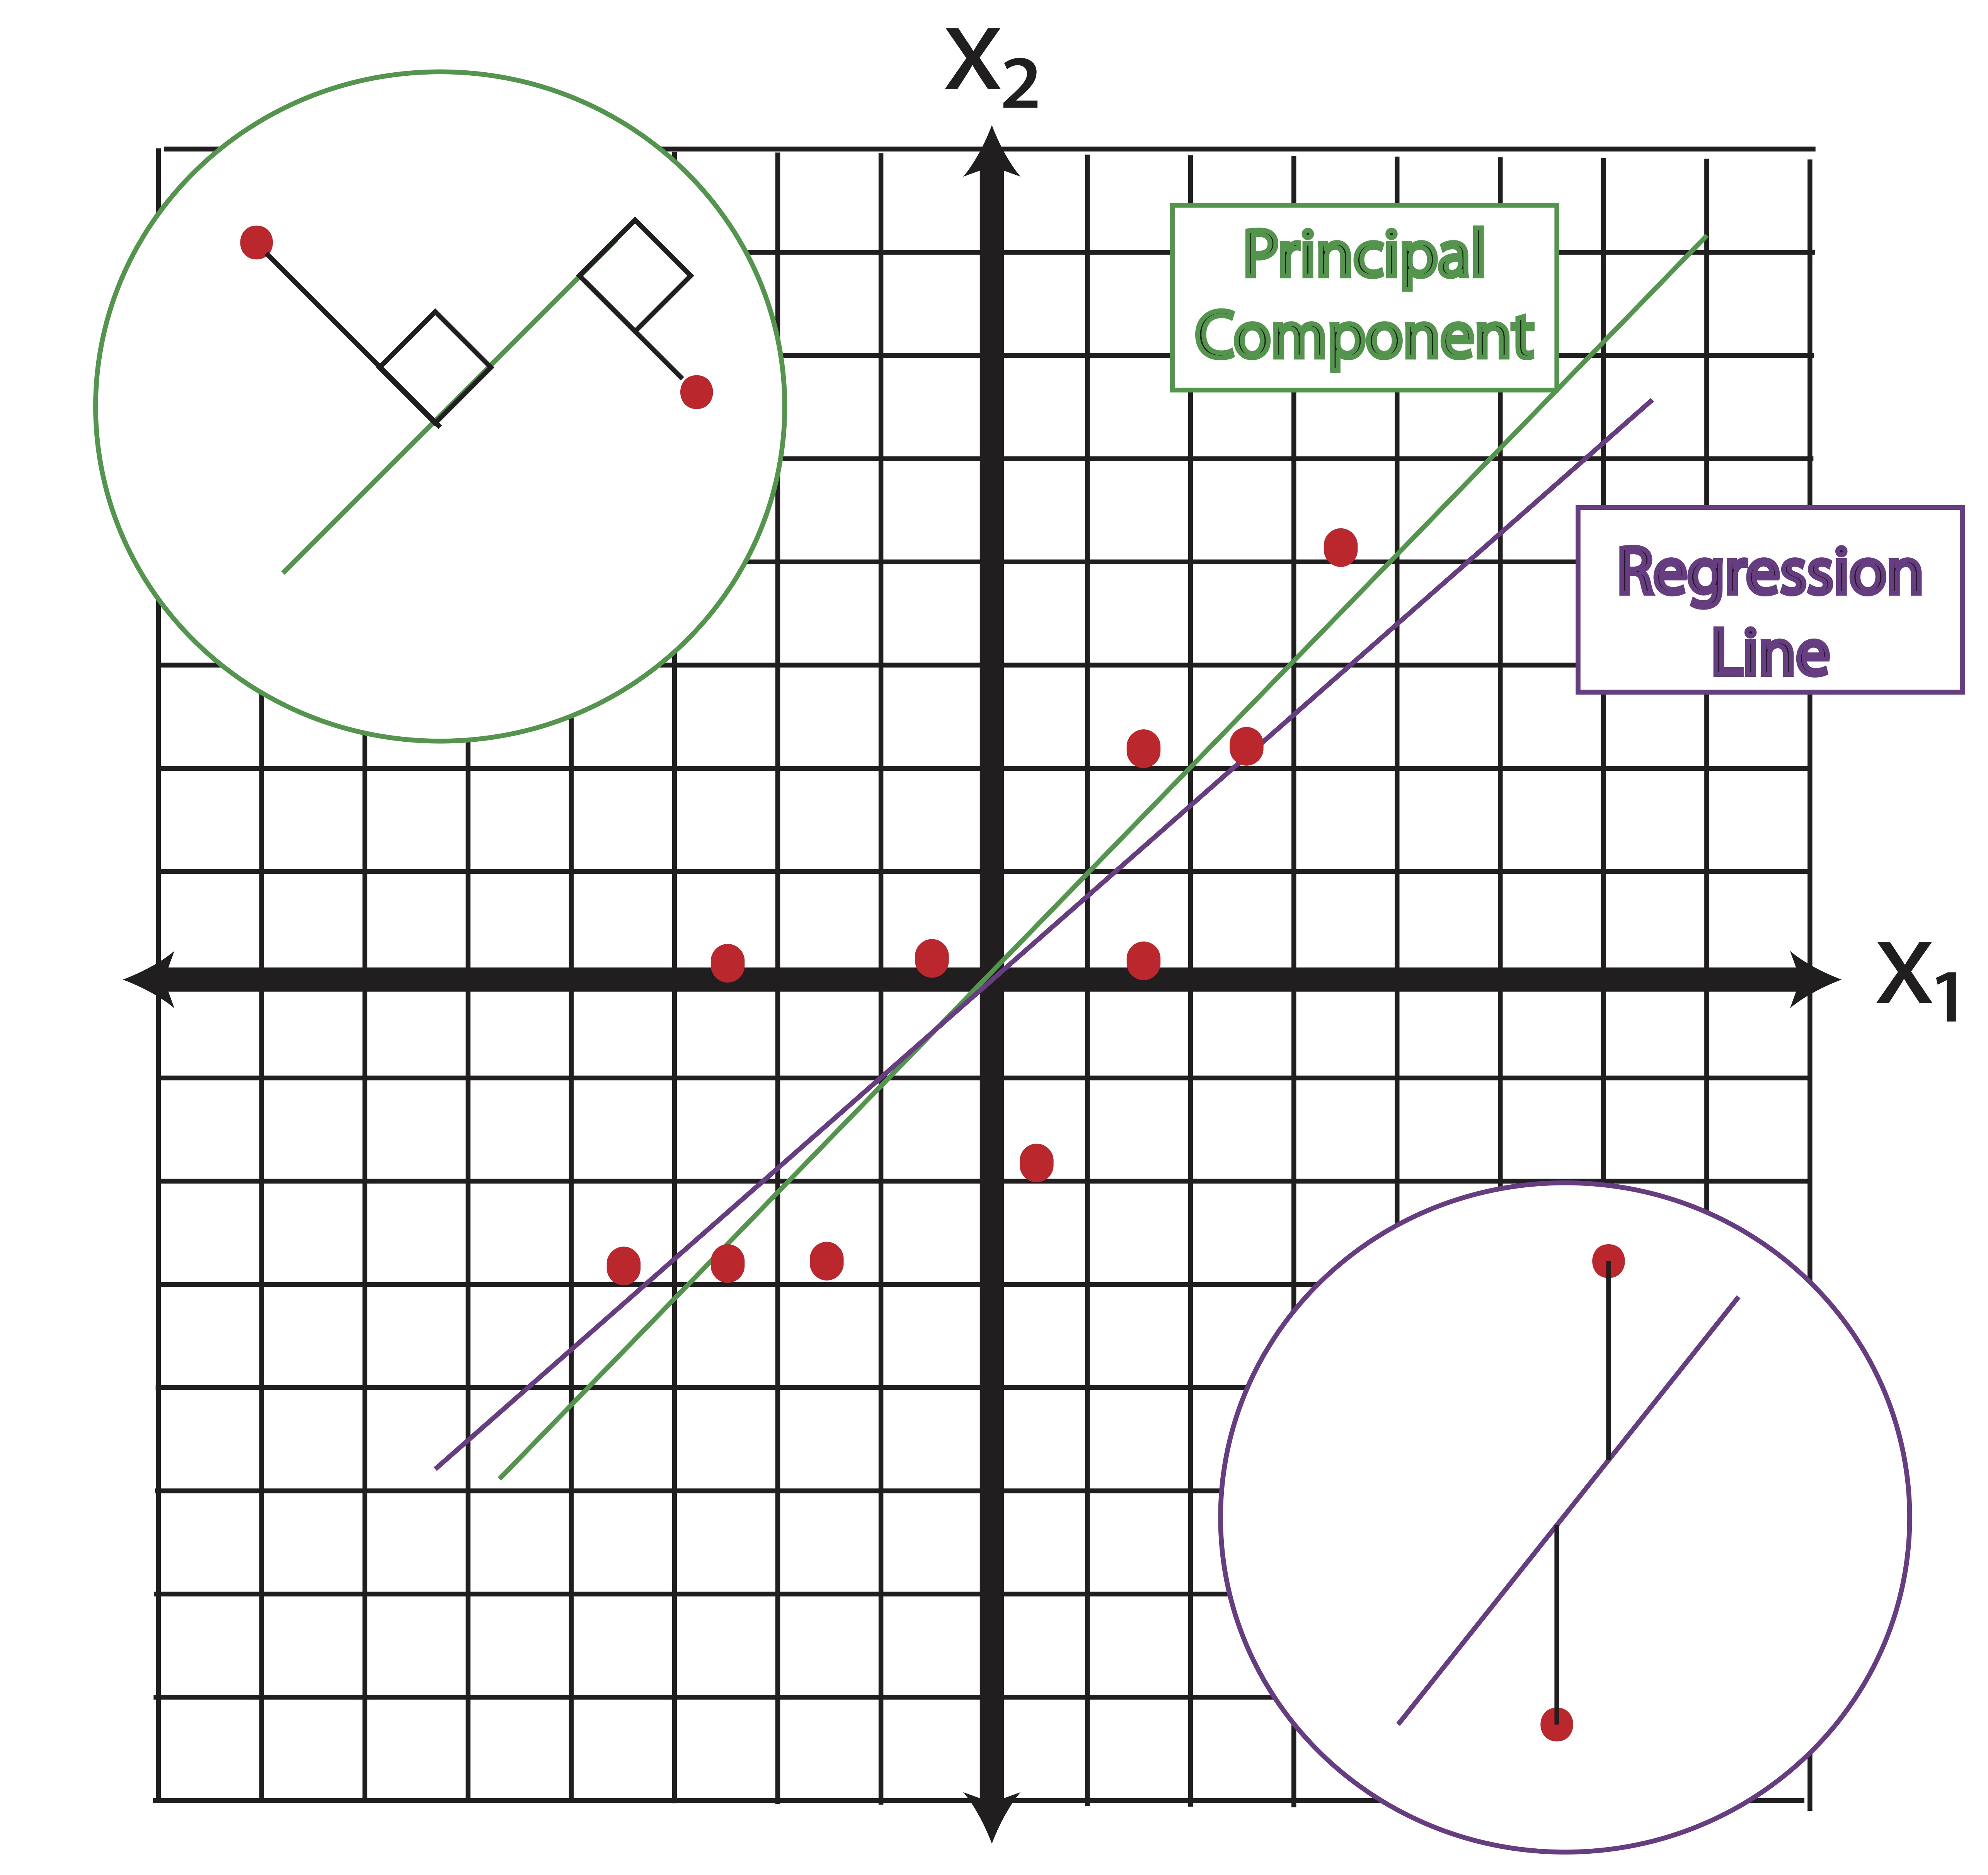 Principal Components vs. Regression Lines